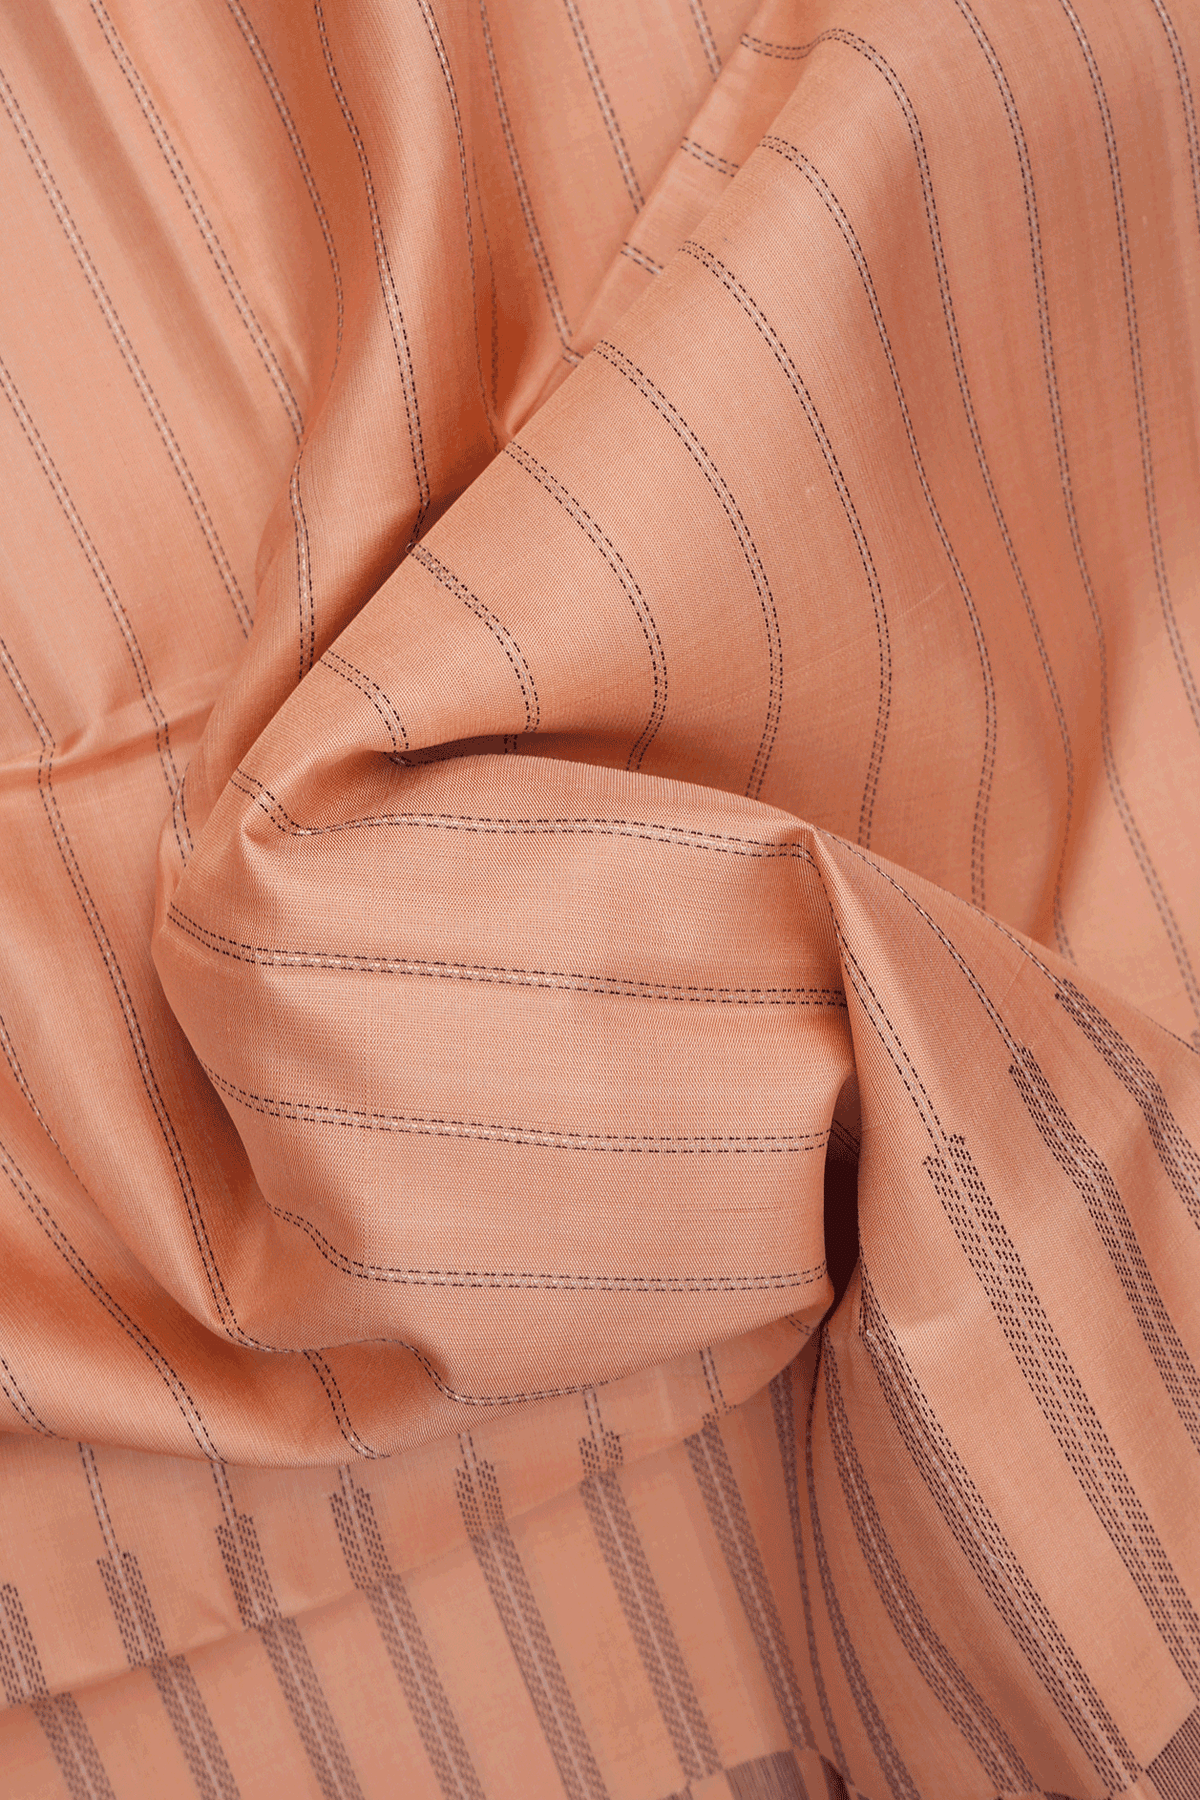 Stripes Threadwork Design Pastel Orange Soft Silk Saree